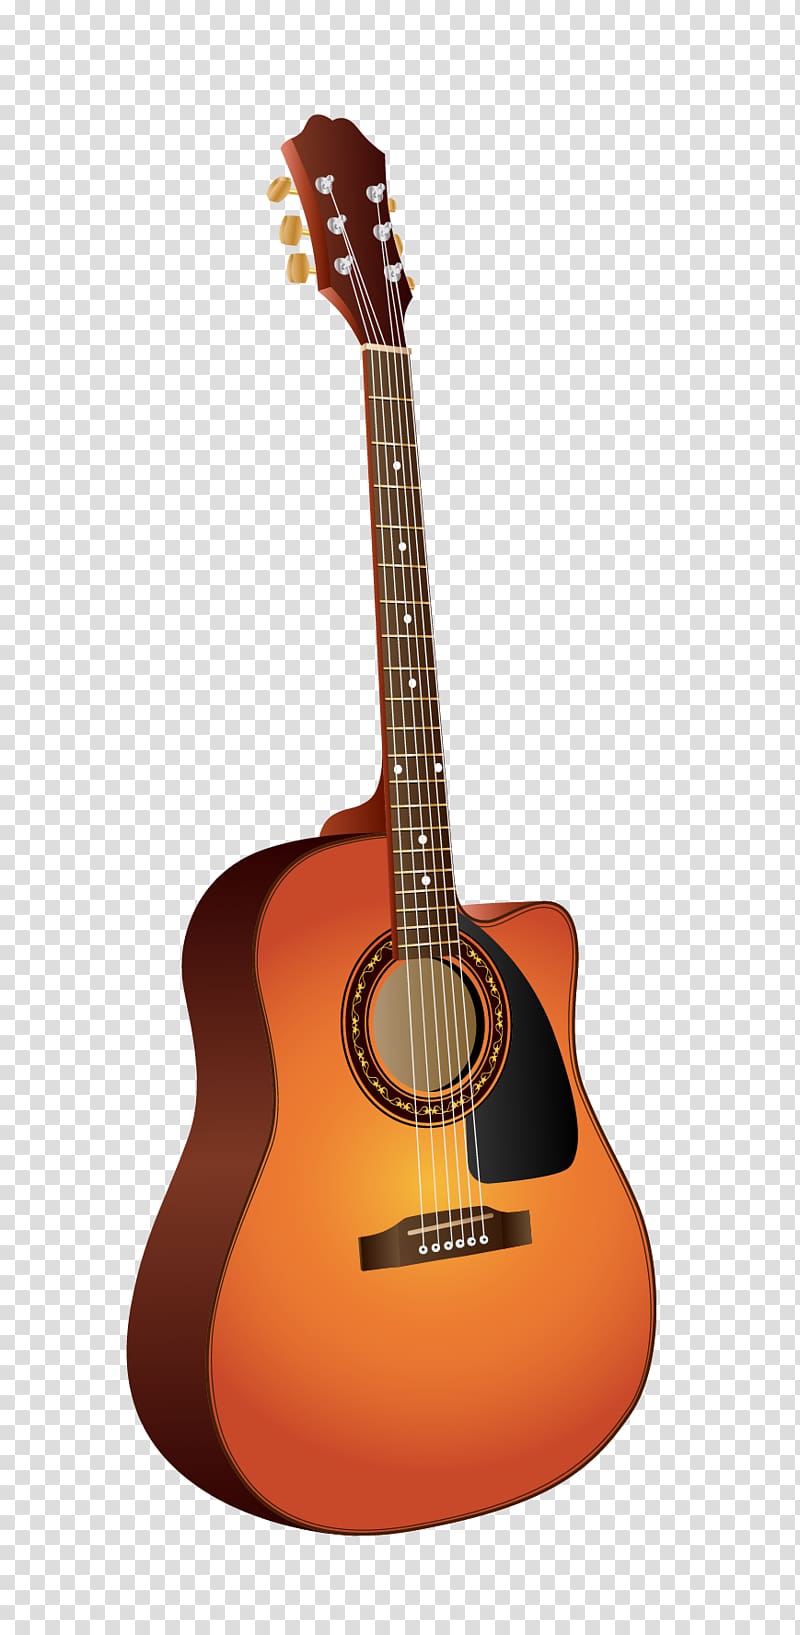 Acoustic guitar Tiple Cuatro, Guitar elements transparent background PNG clipart